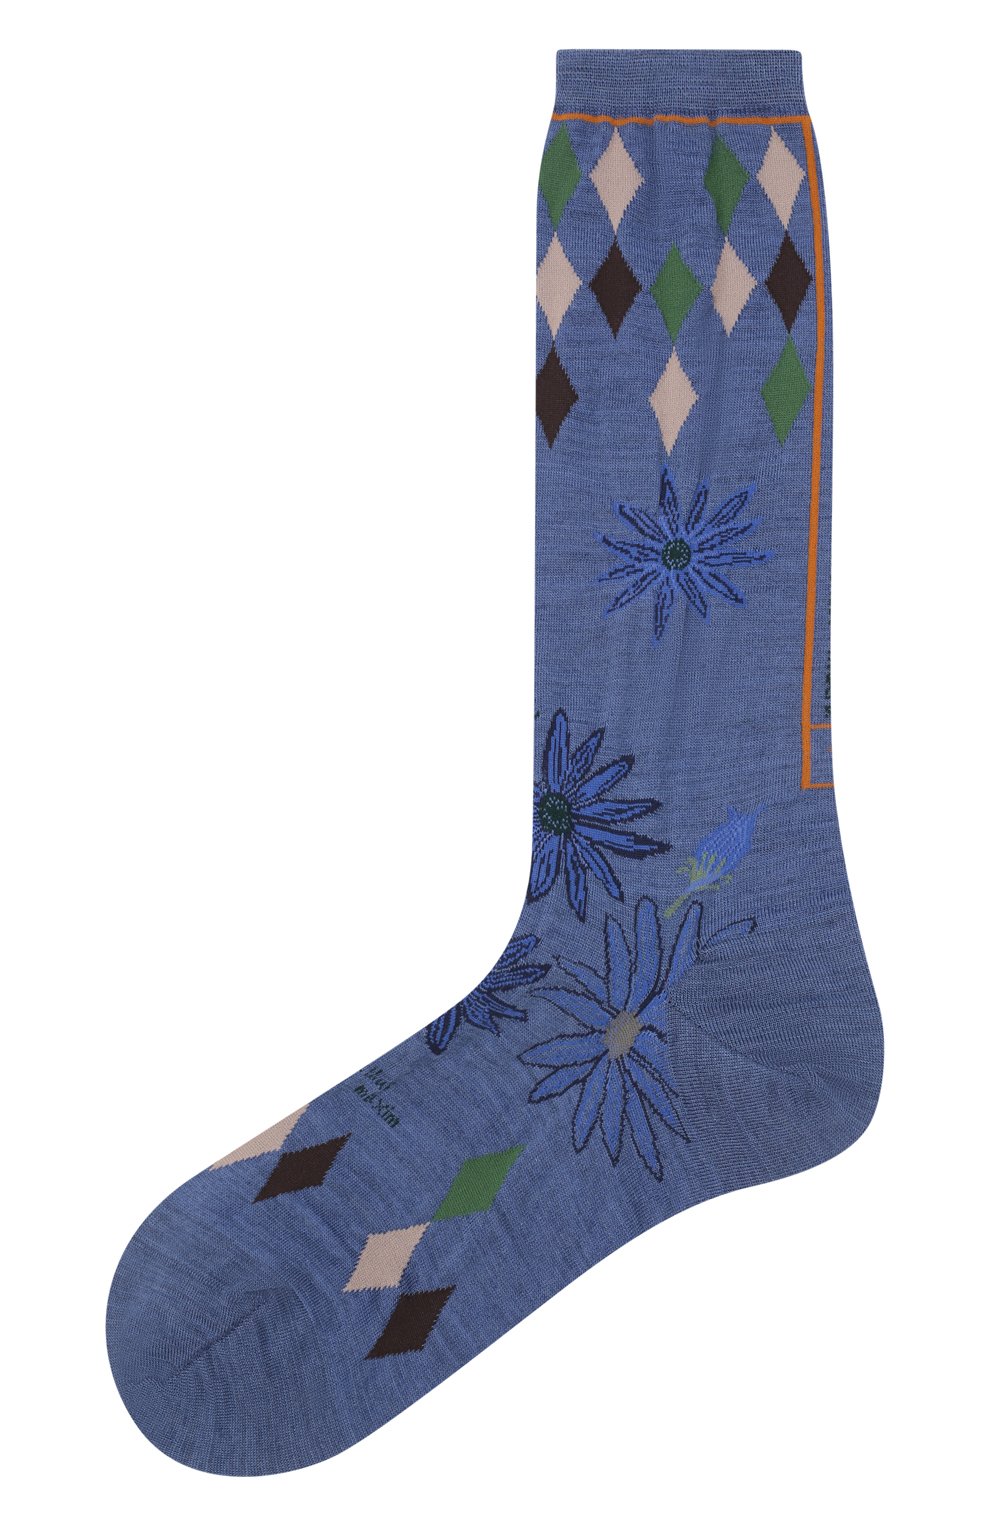 Женские шерстяные носки ANTIPAST голубого цвета, арт. AM-675A | Фото 1 (Материал внешний: Шерсть, Синтетический материал)